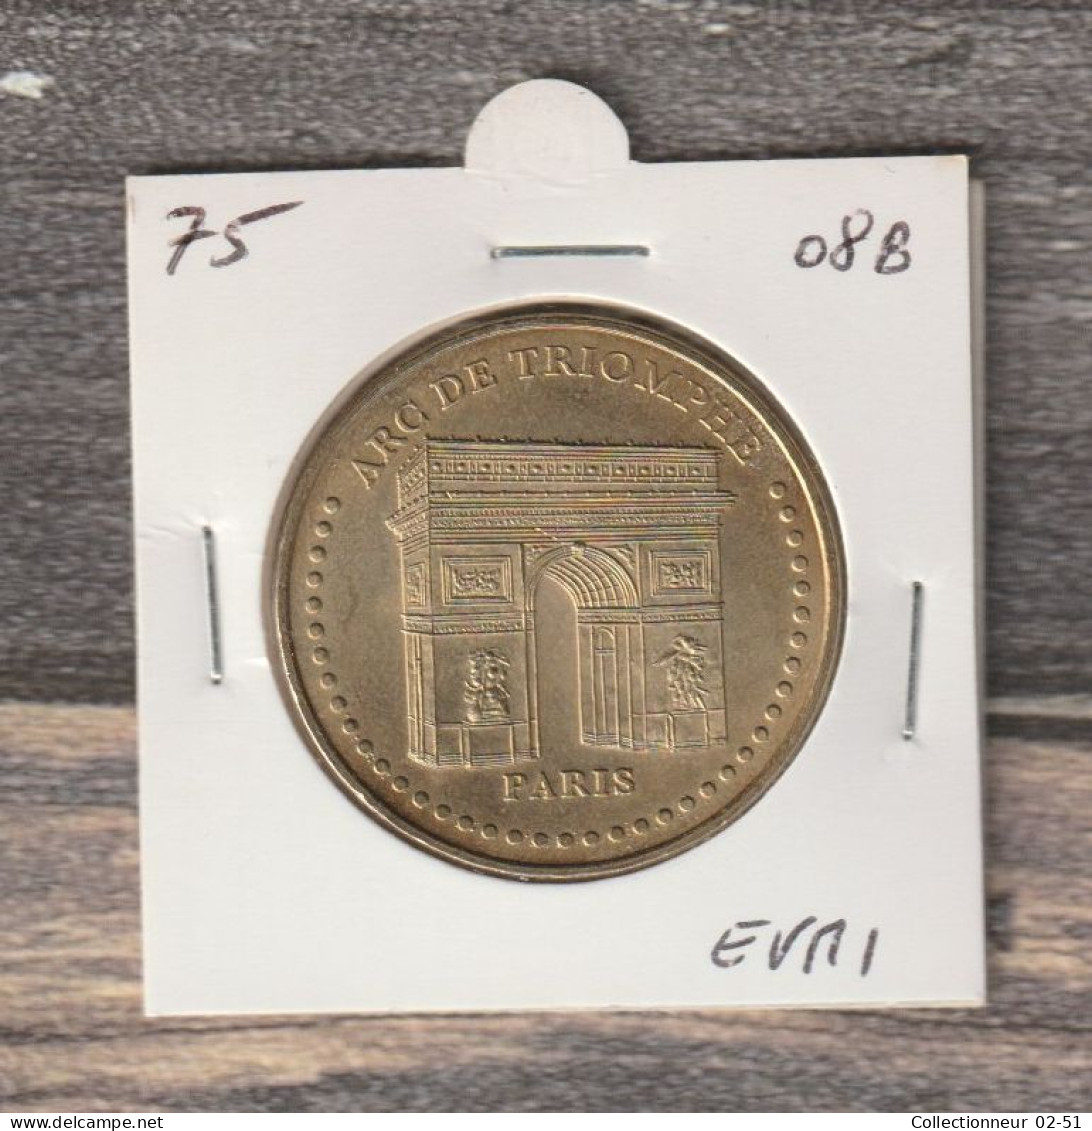 Monnaie De Paris : Arc De Triomphe - 2008 - 2008